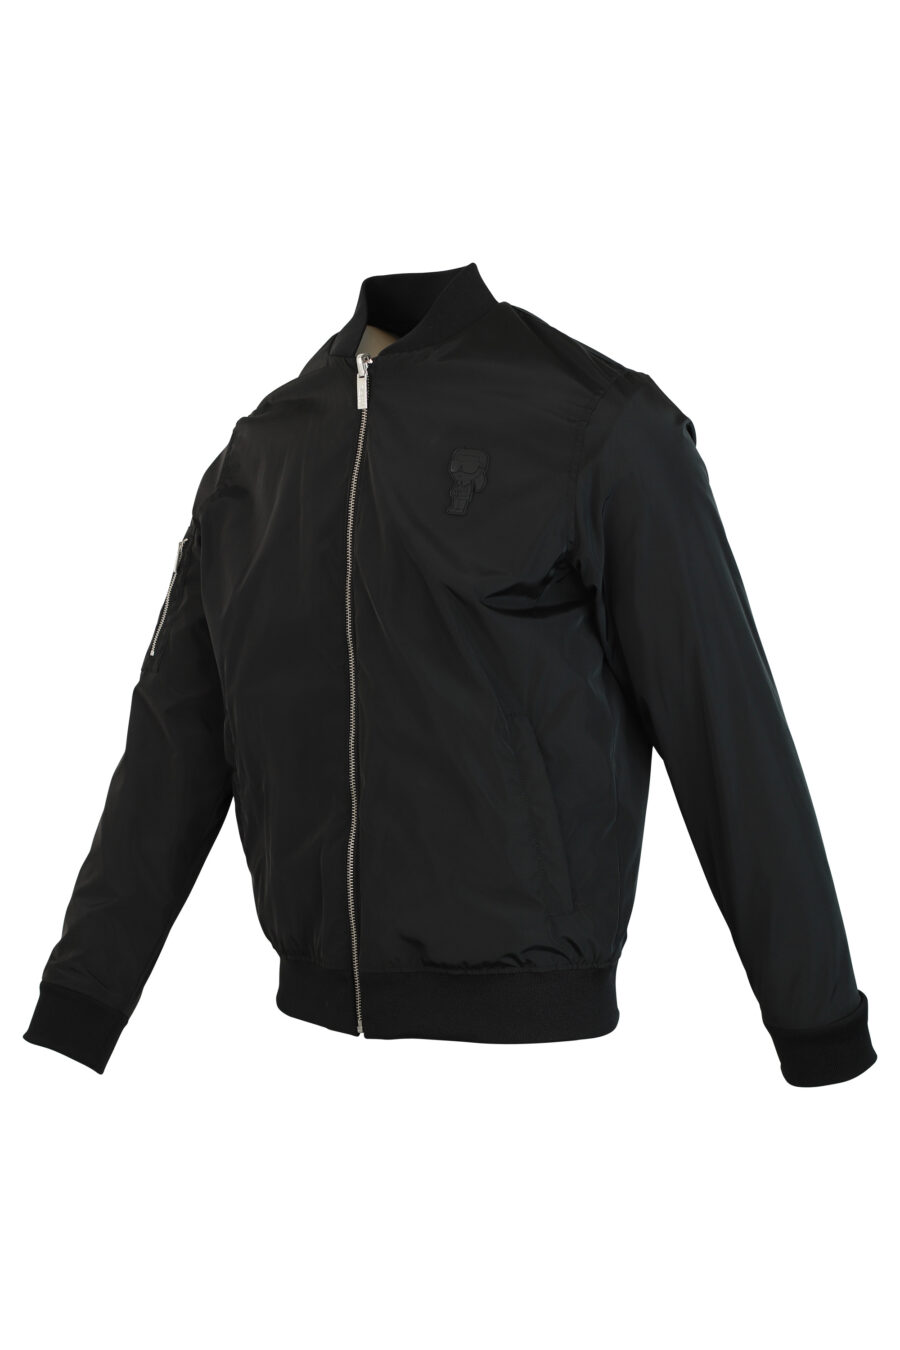 Black reversible bomber jacket with sleeve pocket - 4062226199117 2